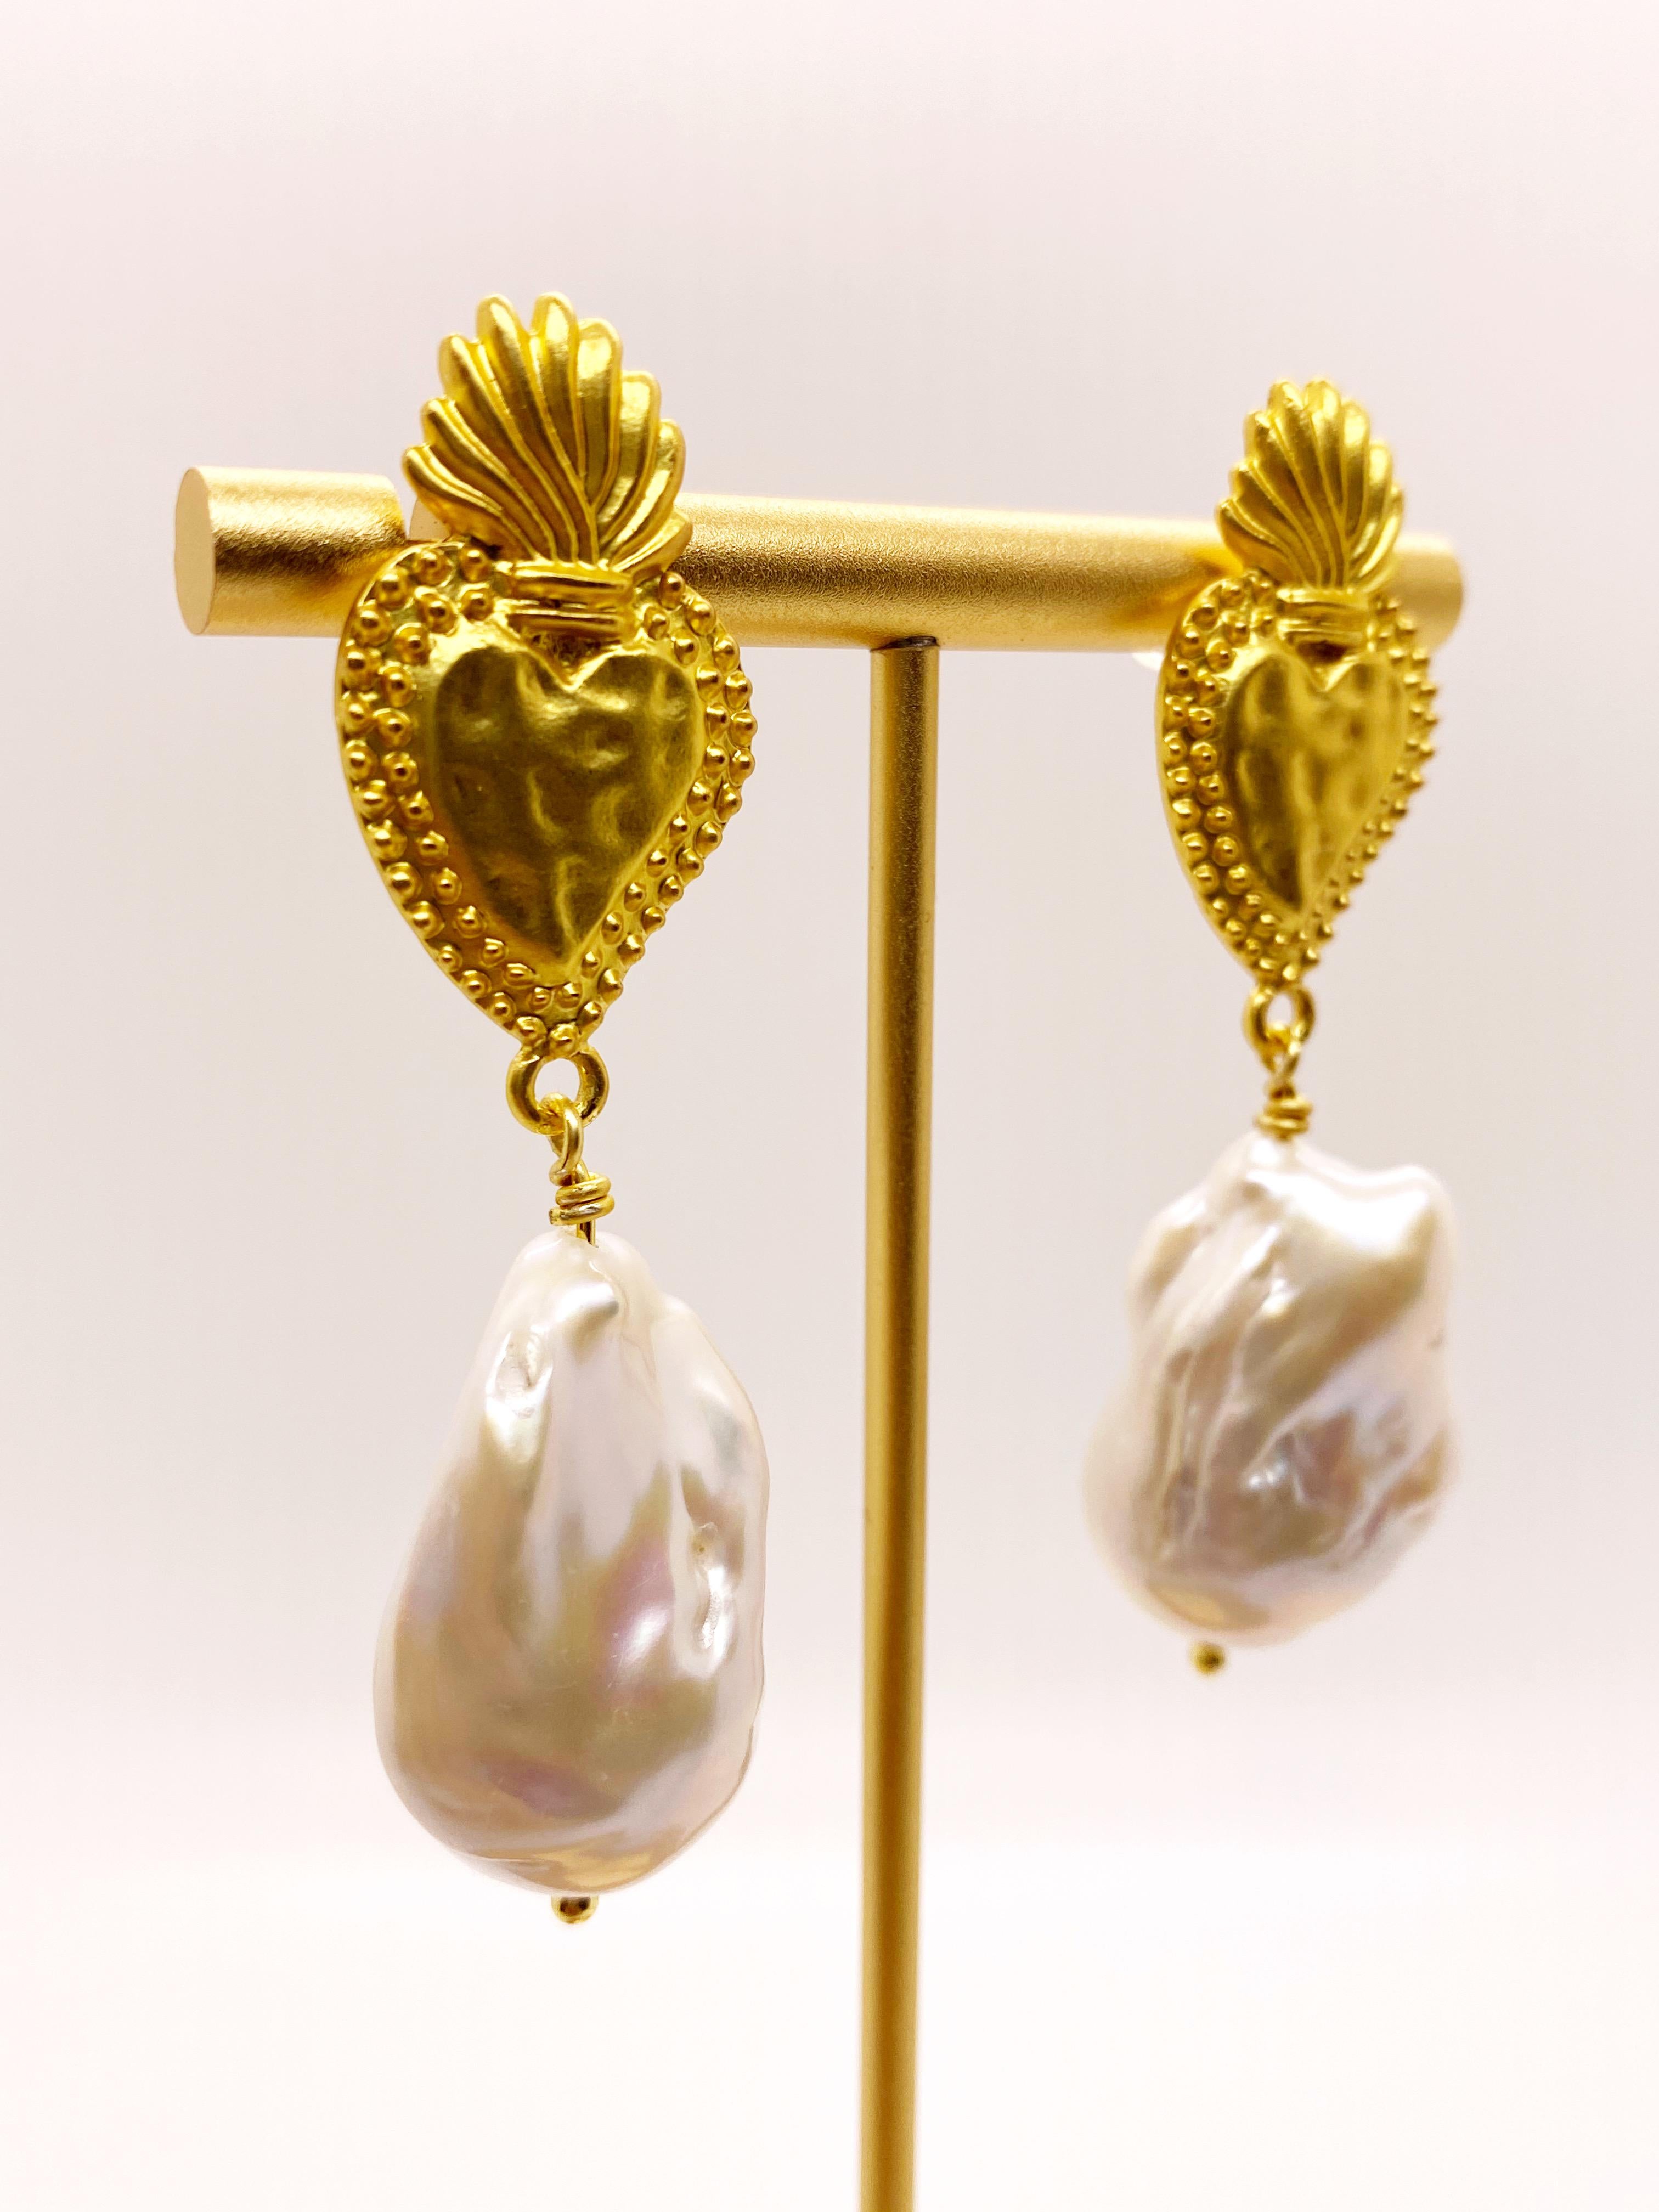 Eine große weiße Süßwasserbarockflammenkugelperle hängt an einem vergoldeten Milagrosa-Ohrringstecker. Größe und Form der Perlen können leicht variieren, da es sich um natürliche Perlen handelt. Statement-Ohrringe.

*Unser Schmuck bietet maximalen